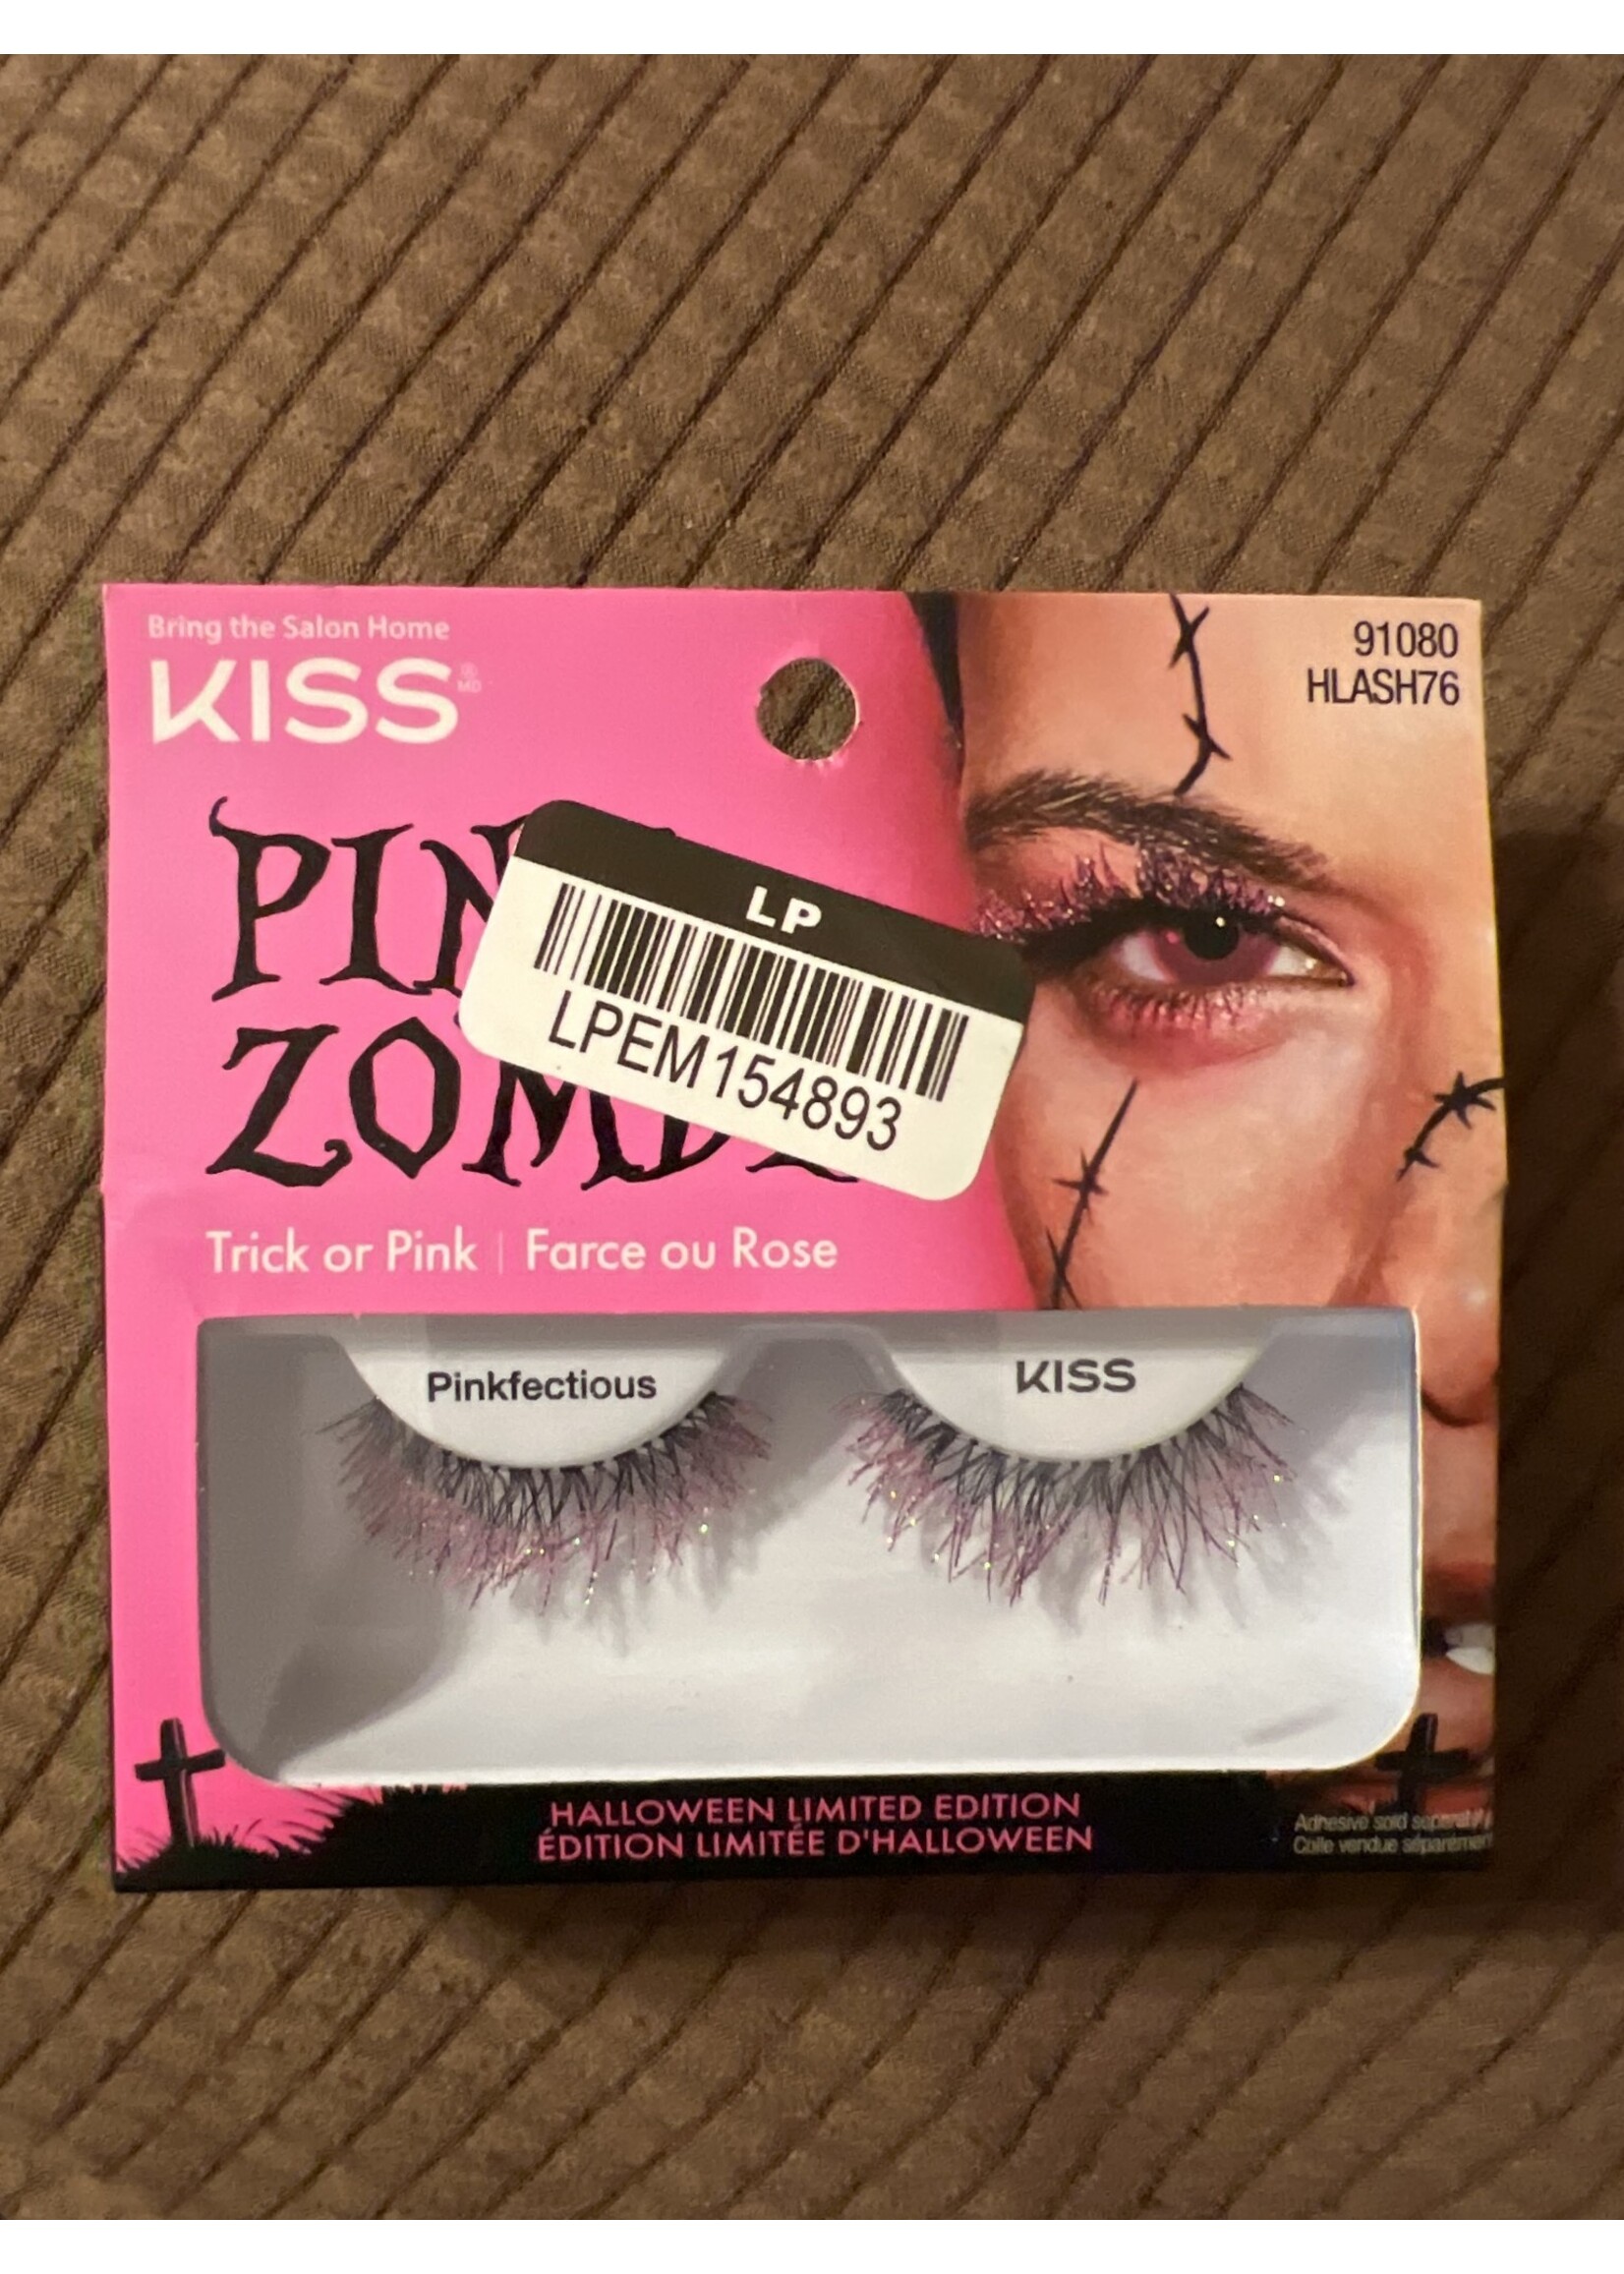 KISS Products Adhesive False Eyelashes - 2ct